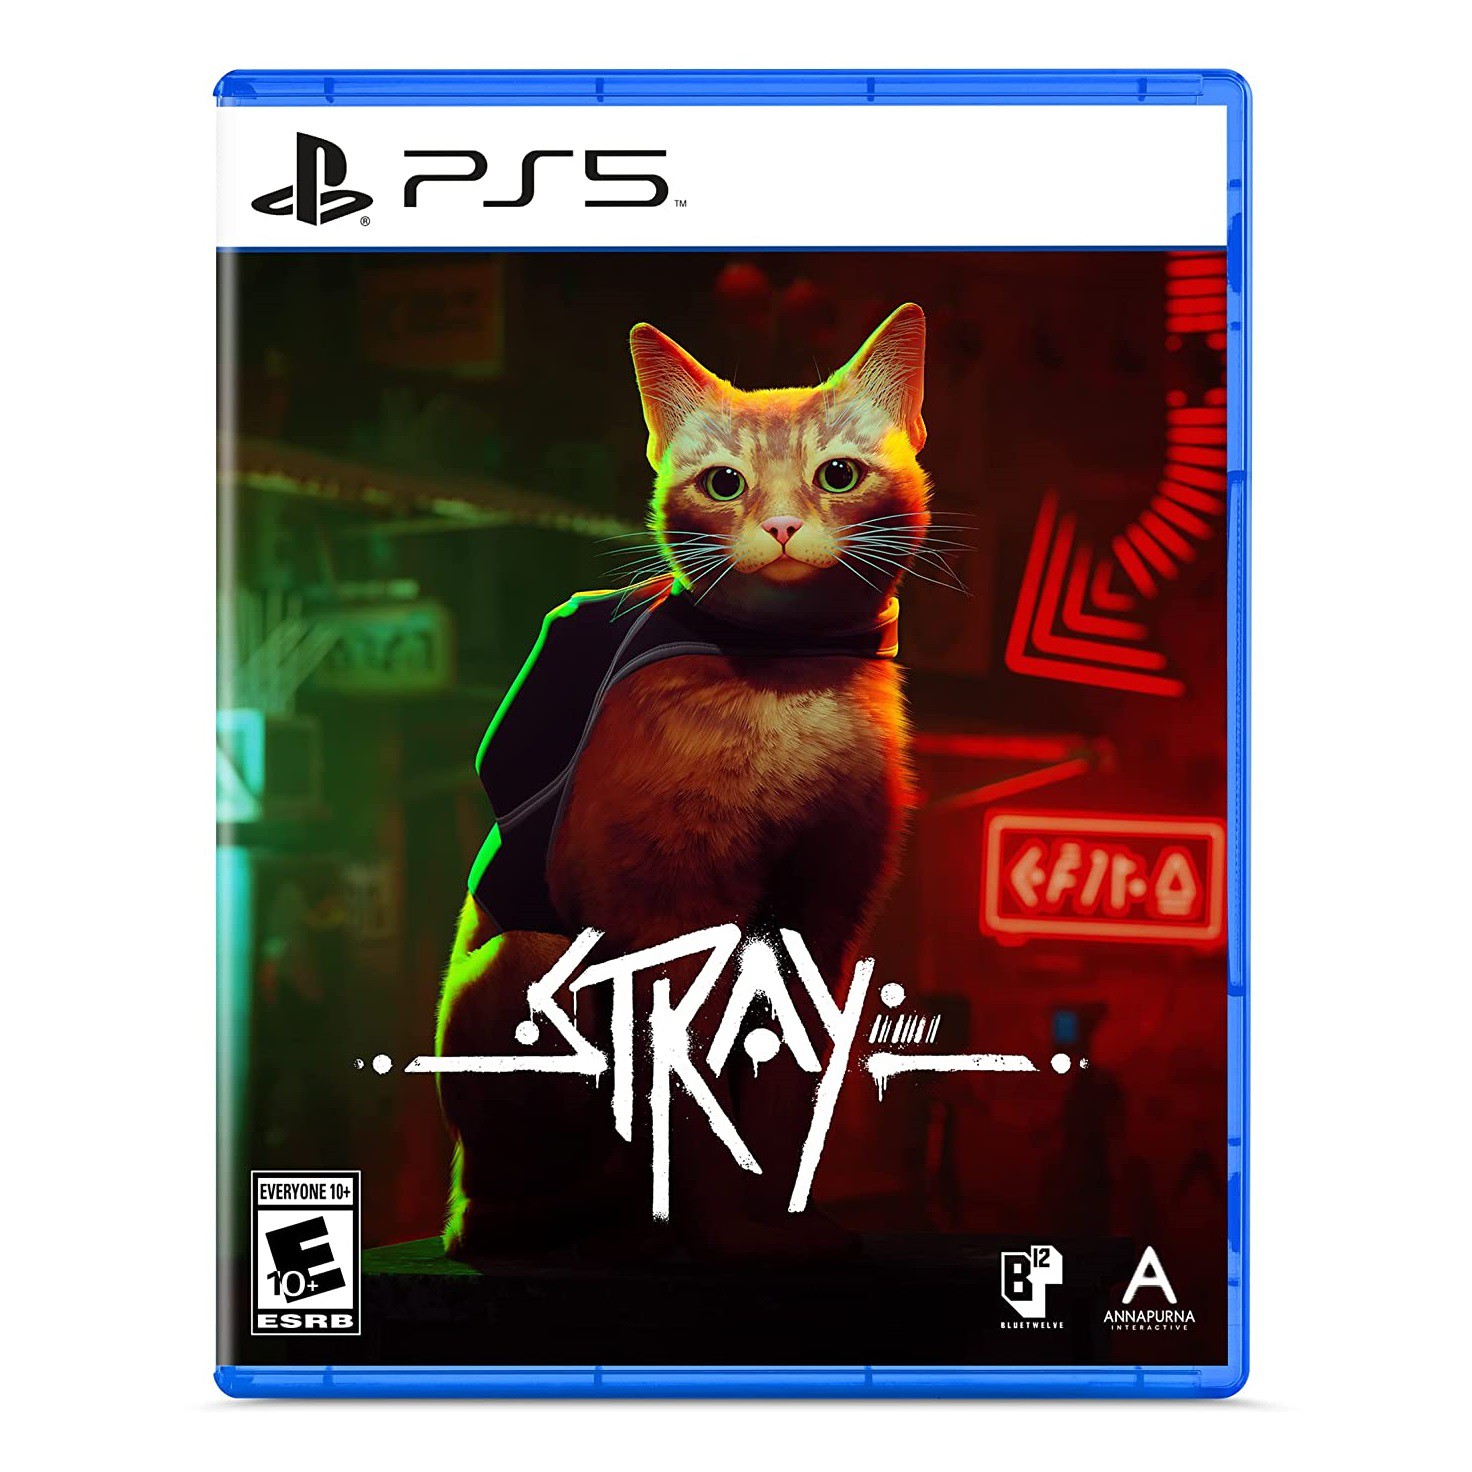 Stray: sucesso do jogo ajuda os gatos na vida real